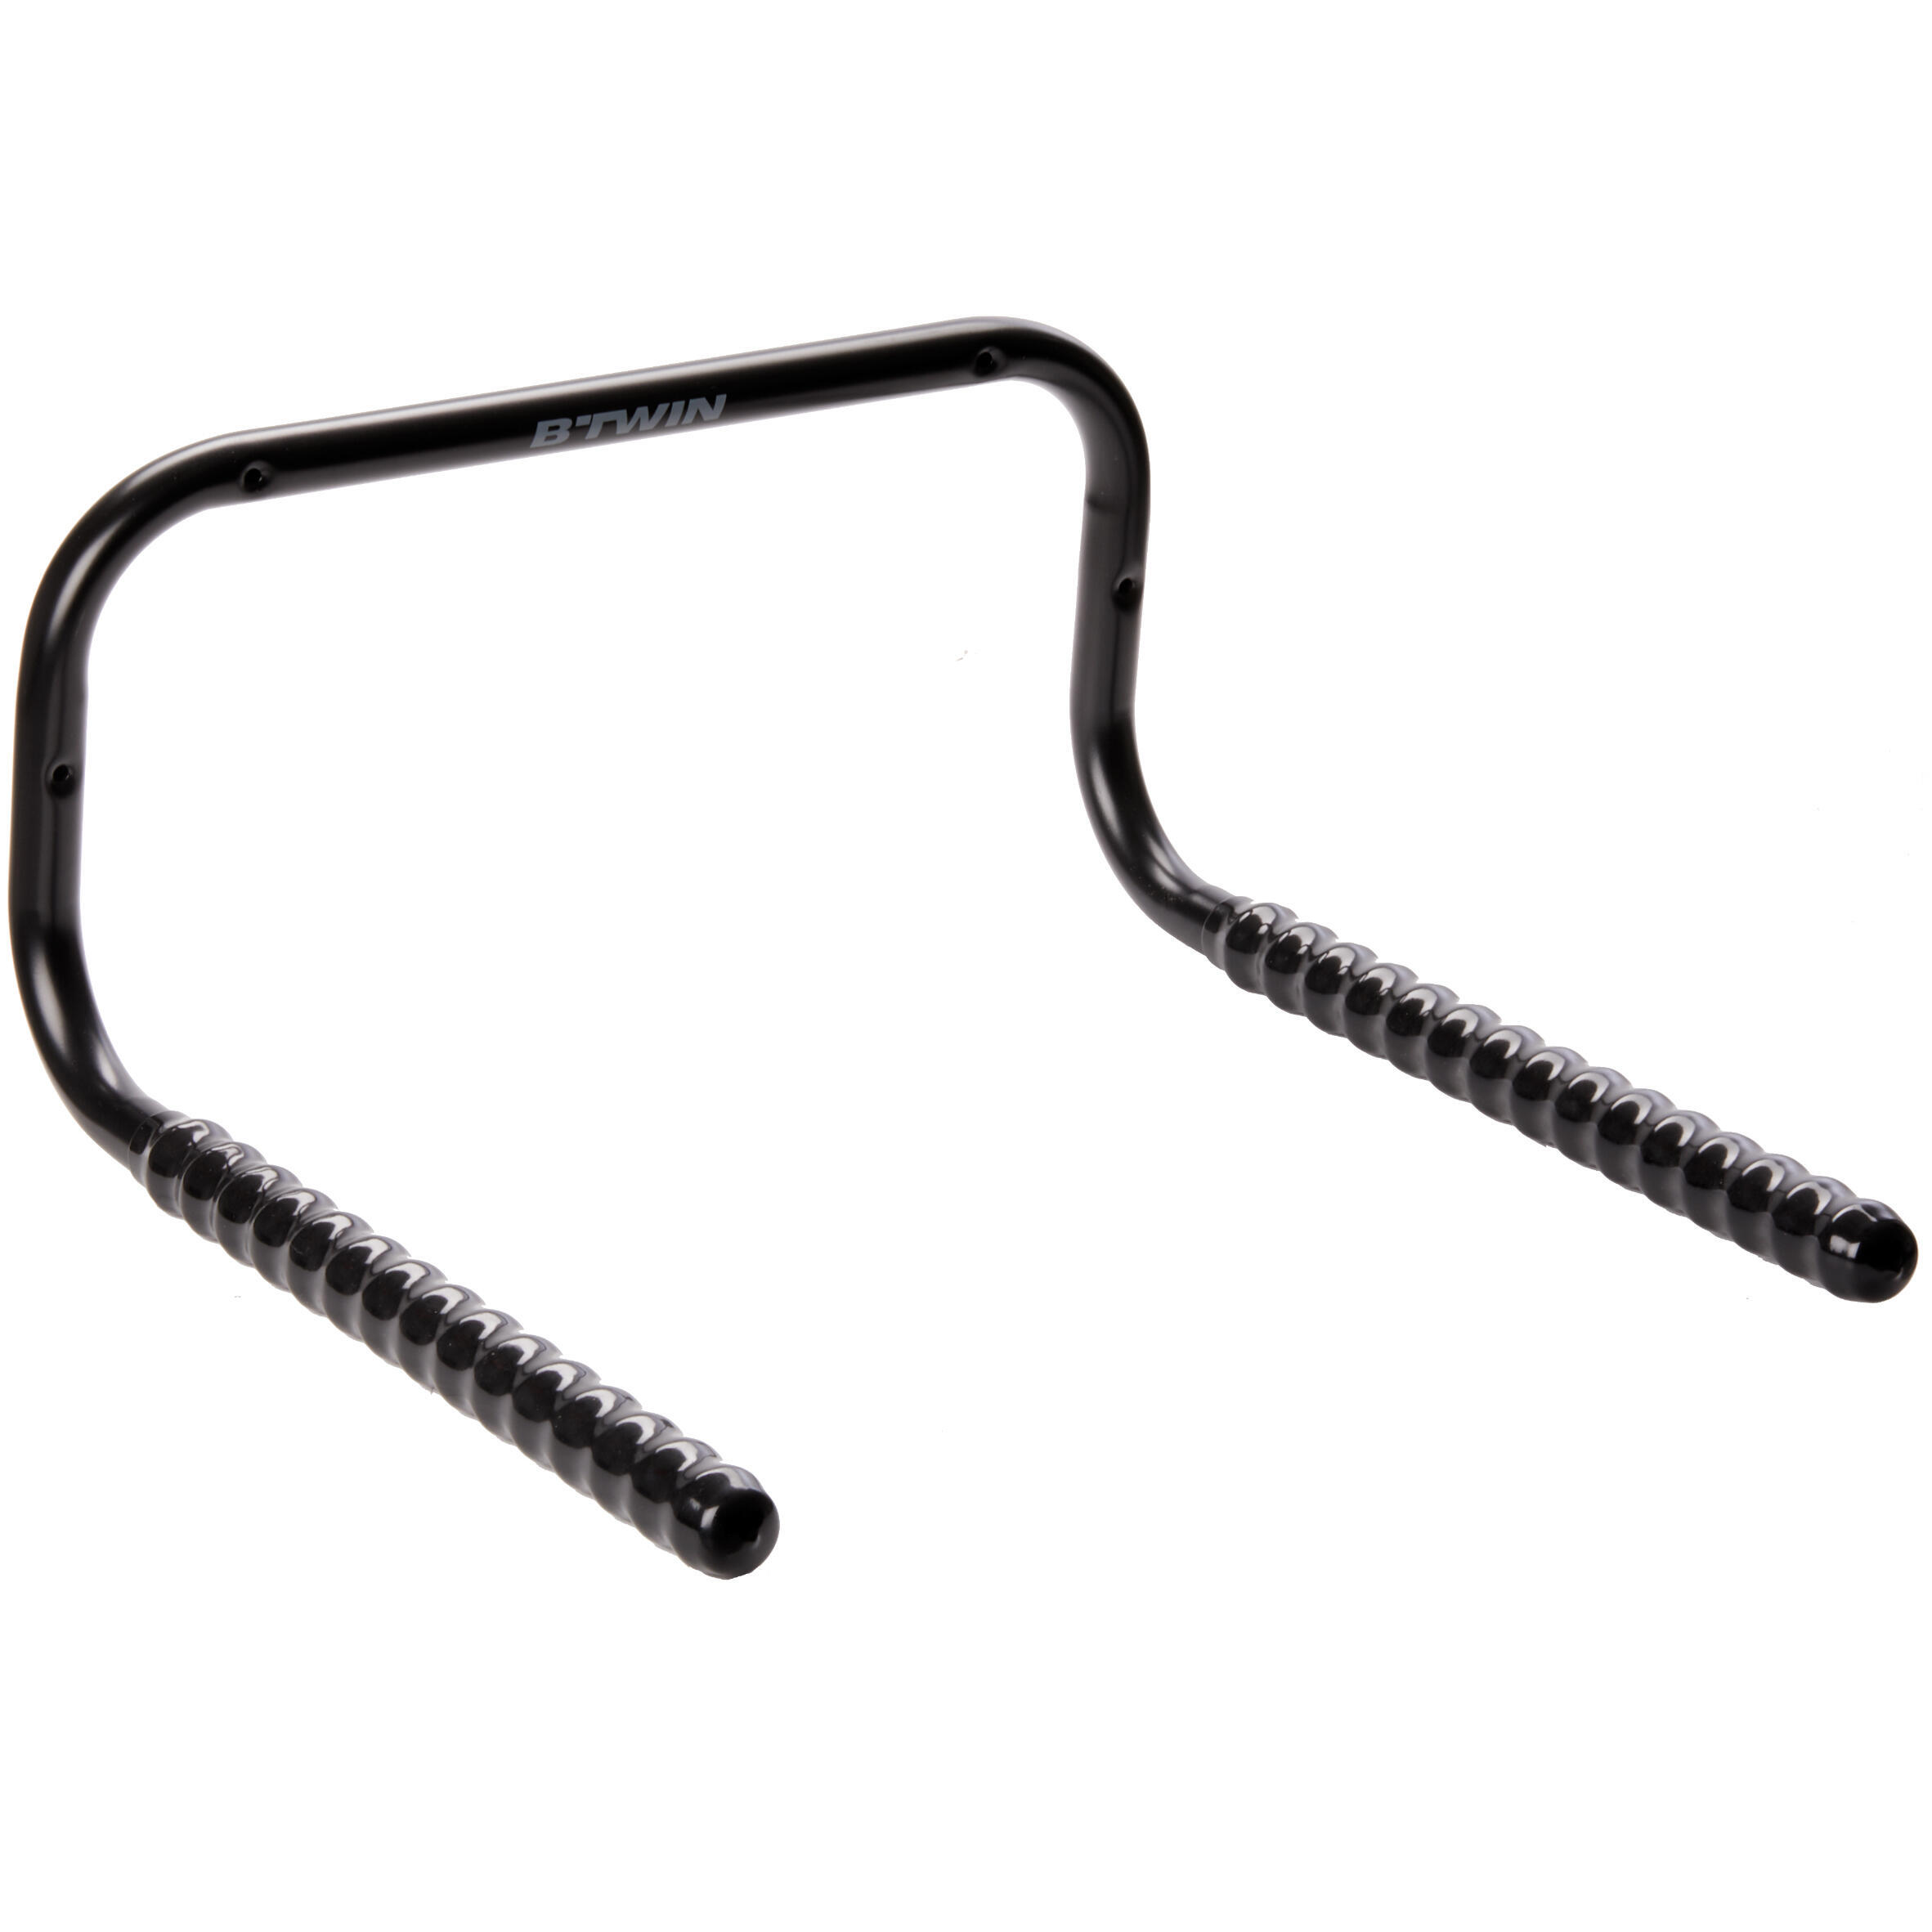 Настенное крепление для хранения 2 велосипедов черное Decathlon onstage cm200 настенное крепление для хранения кабелей наушников гитарных ремней